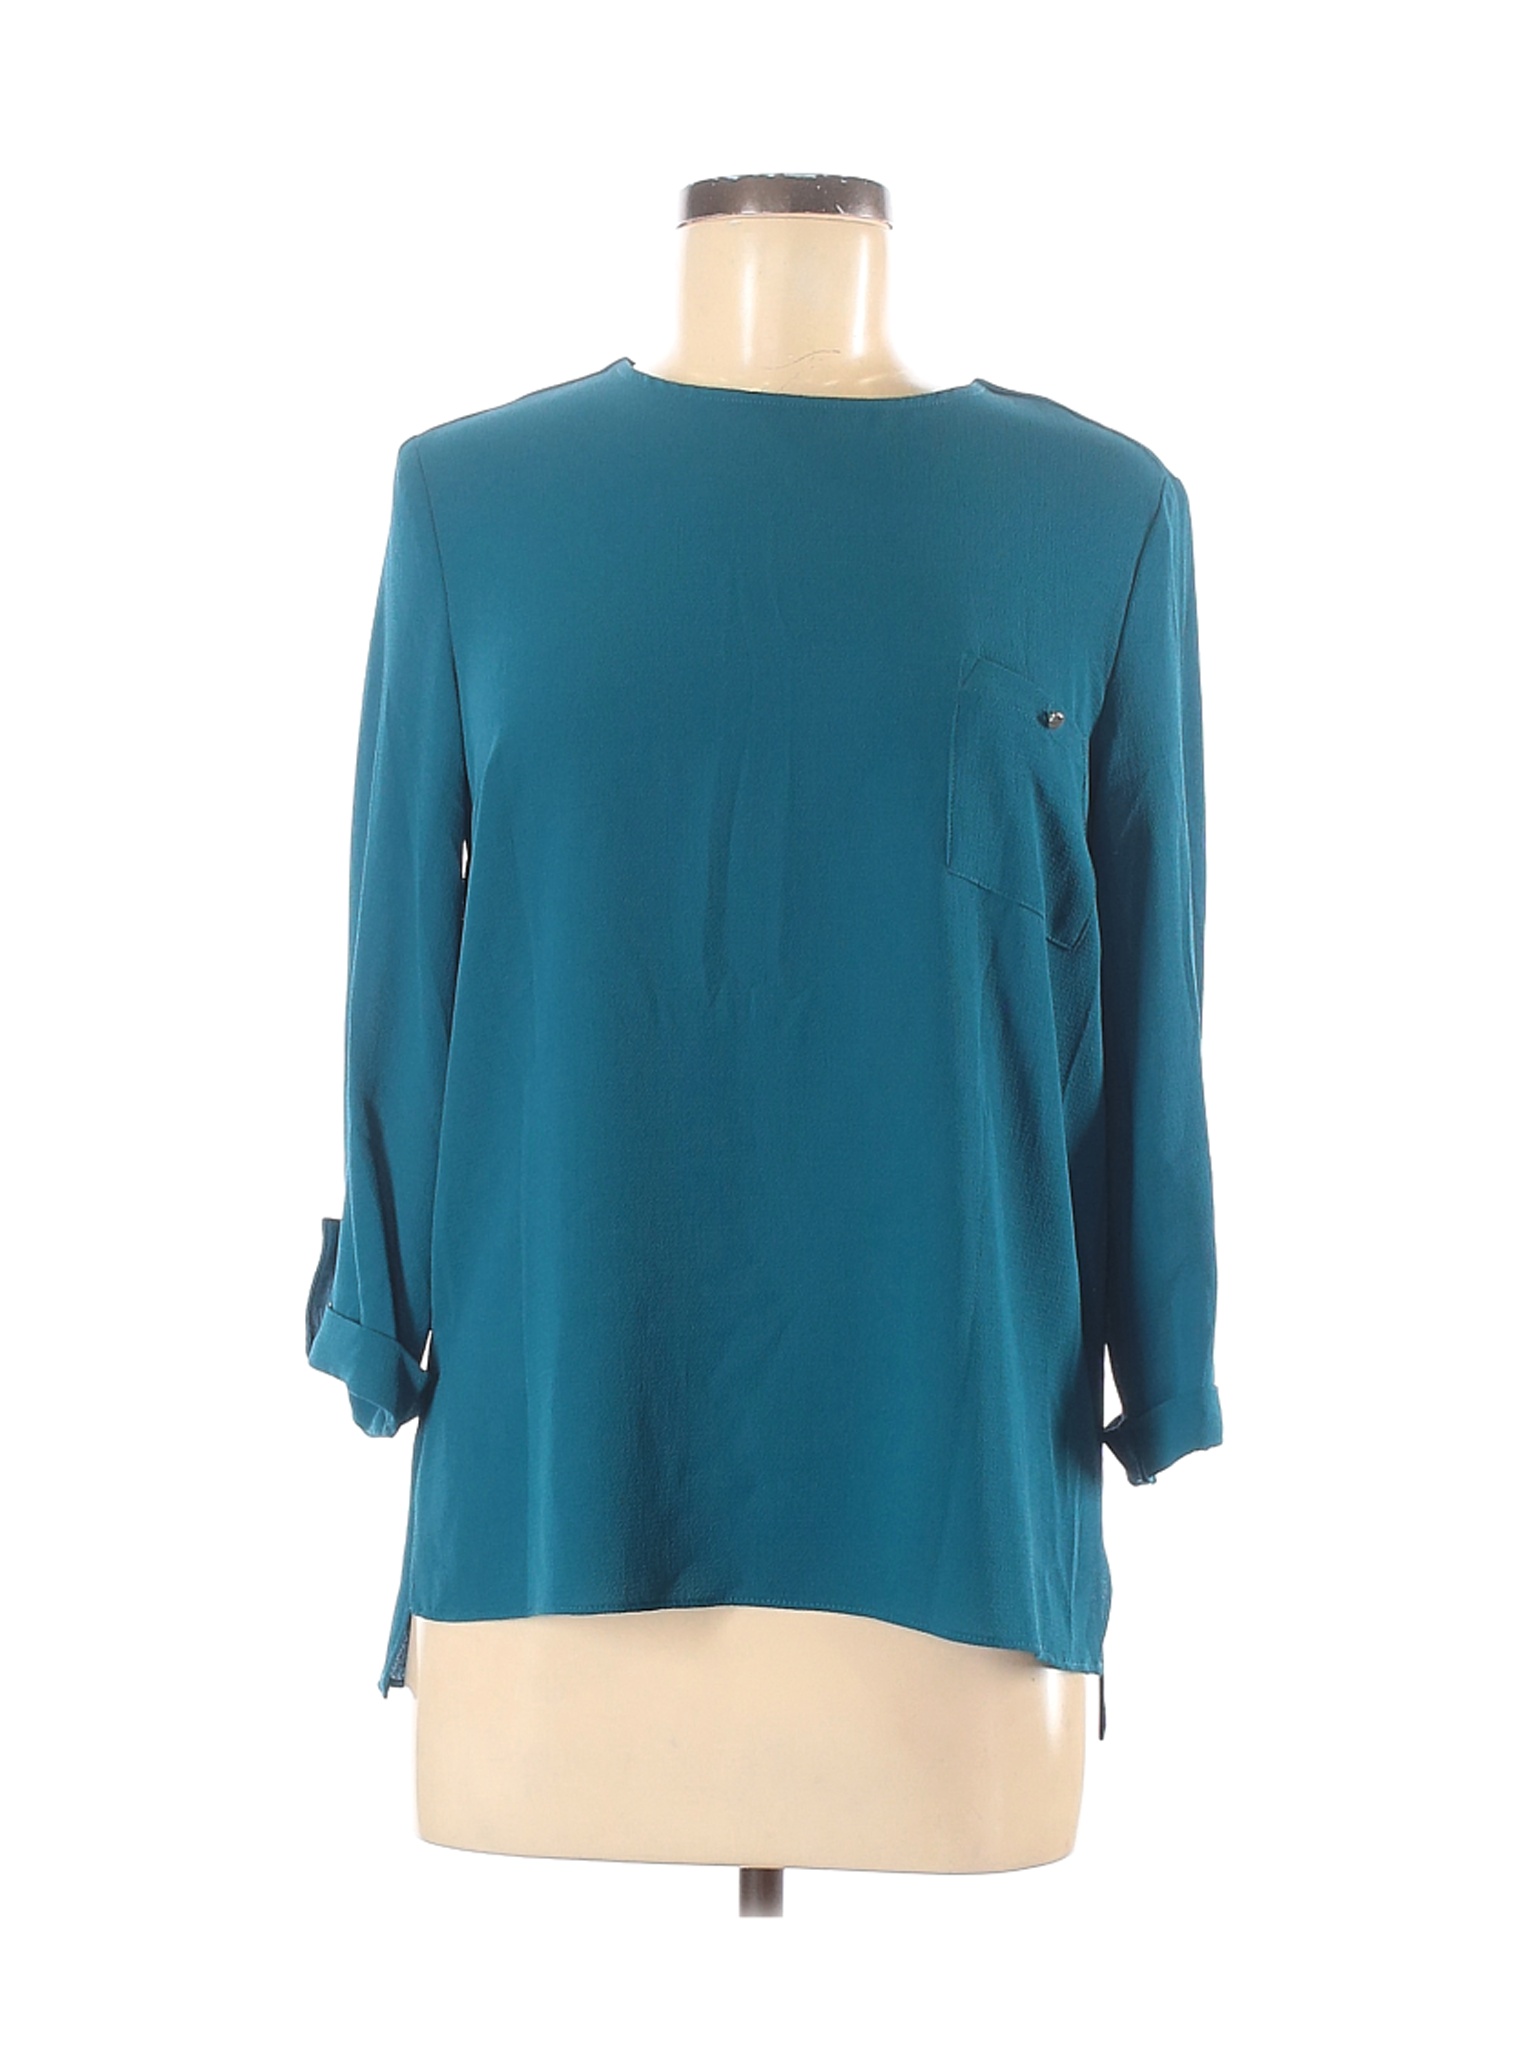 Primark Women Green Long Sleeve Blouse 6 | eBay